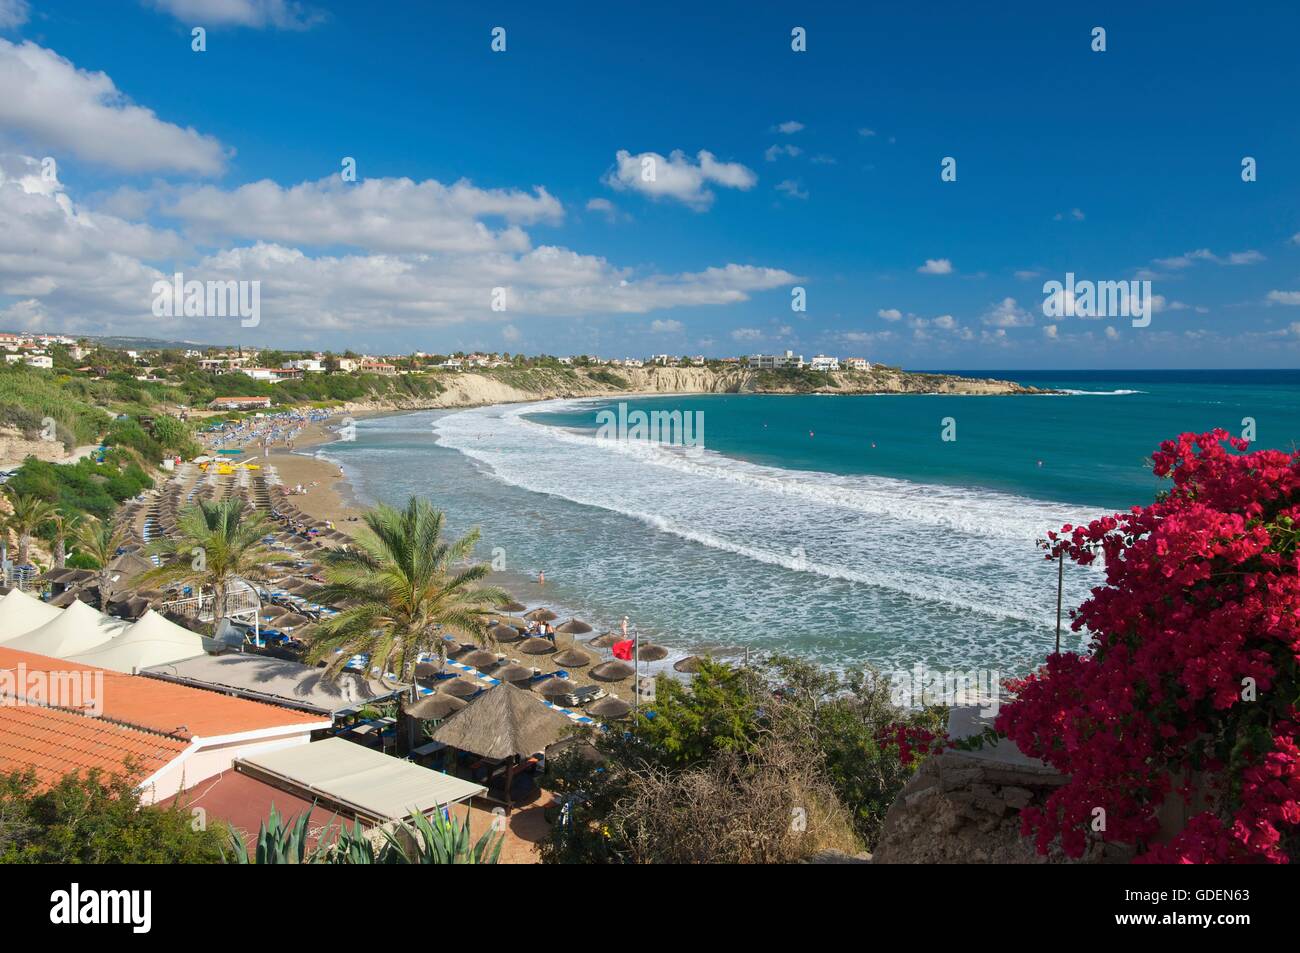 La plage de Coral Bay, Paphos, République de Chypre Banque D'Images